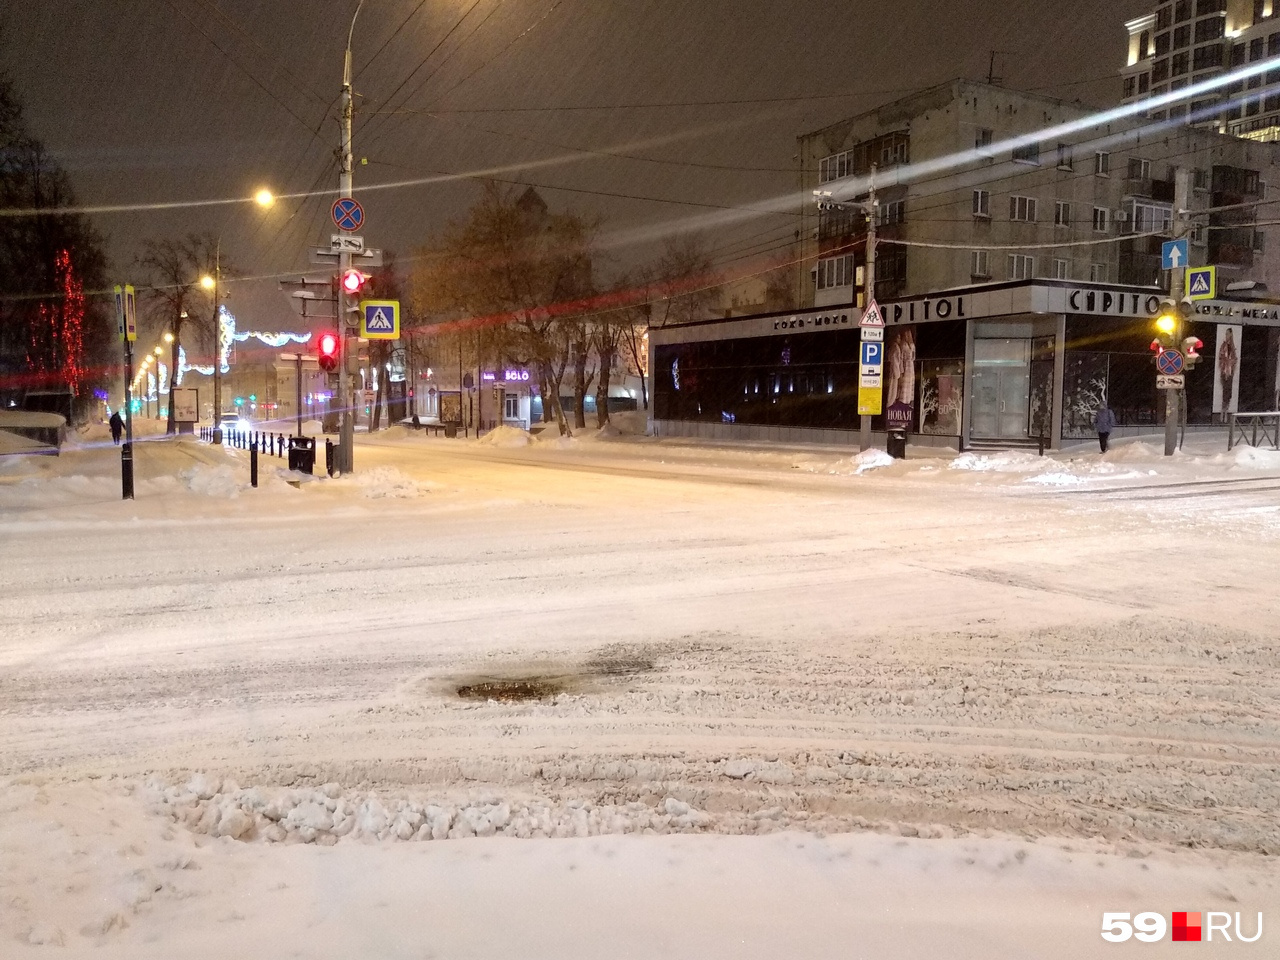 Дороги в центре города расчищены, снег лишь на обочинах